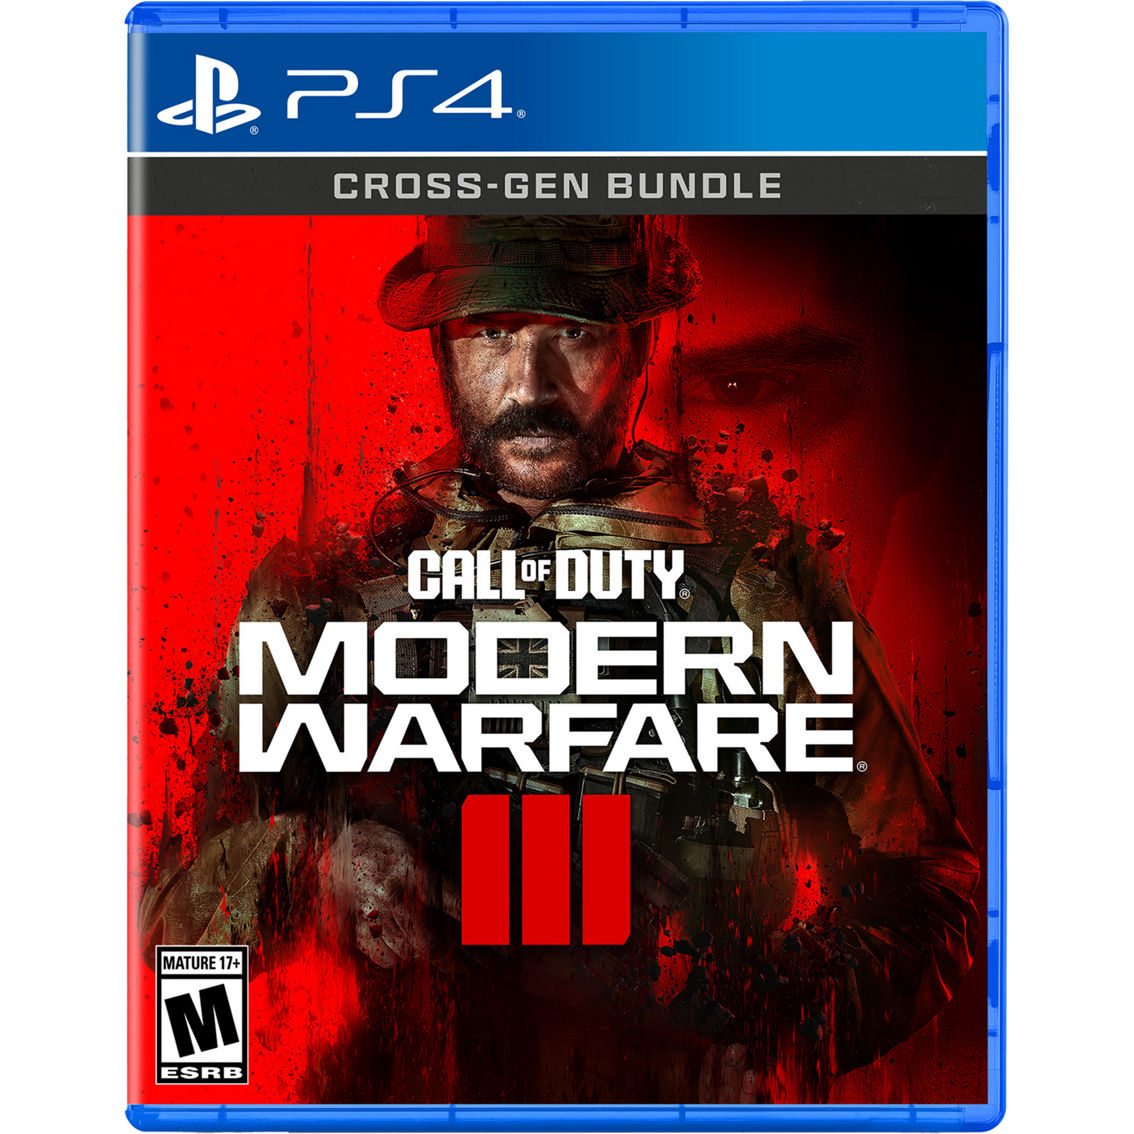 Call of Duty Modern Warfare III (PS4)